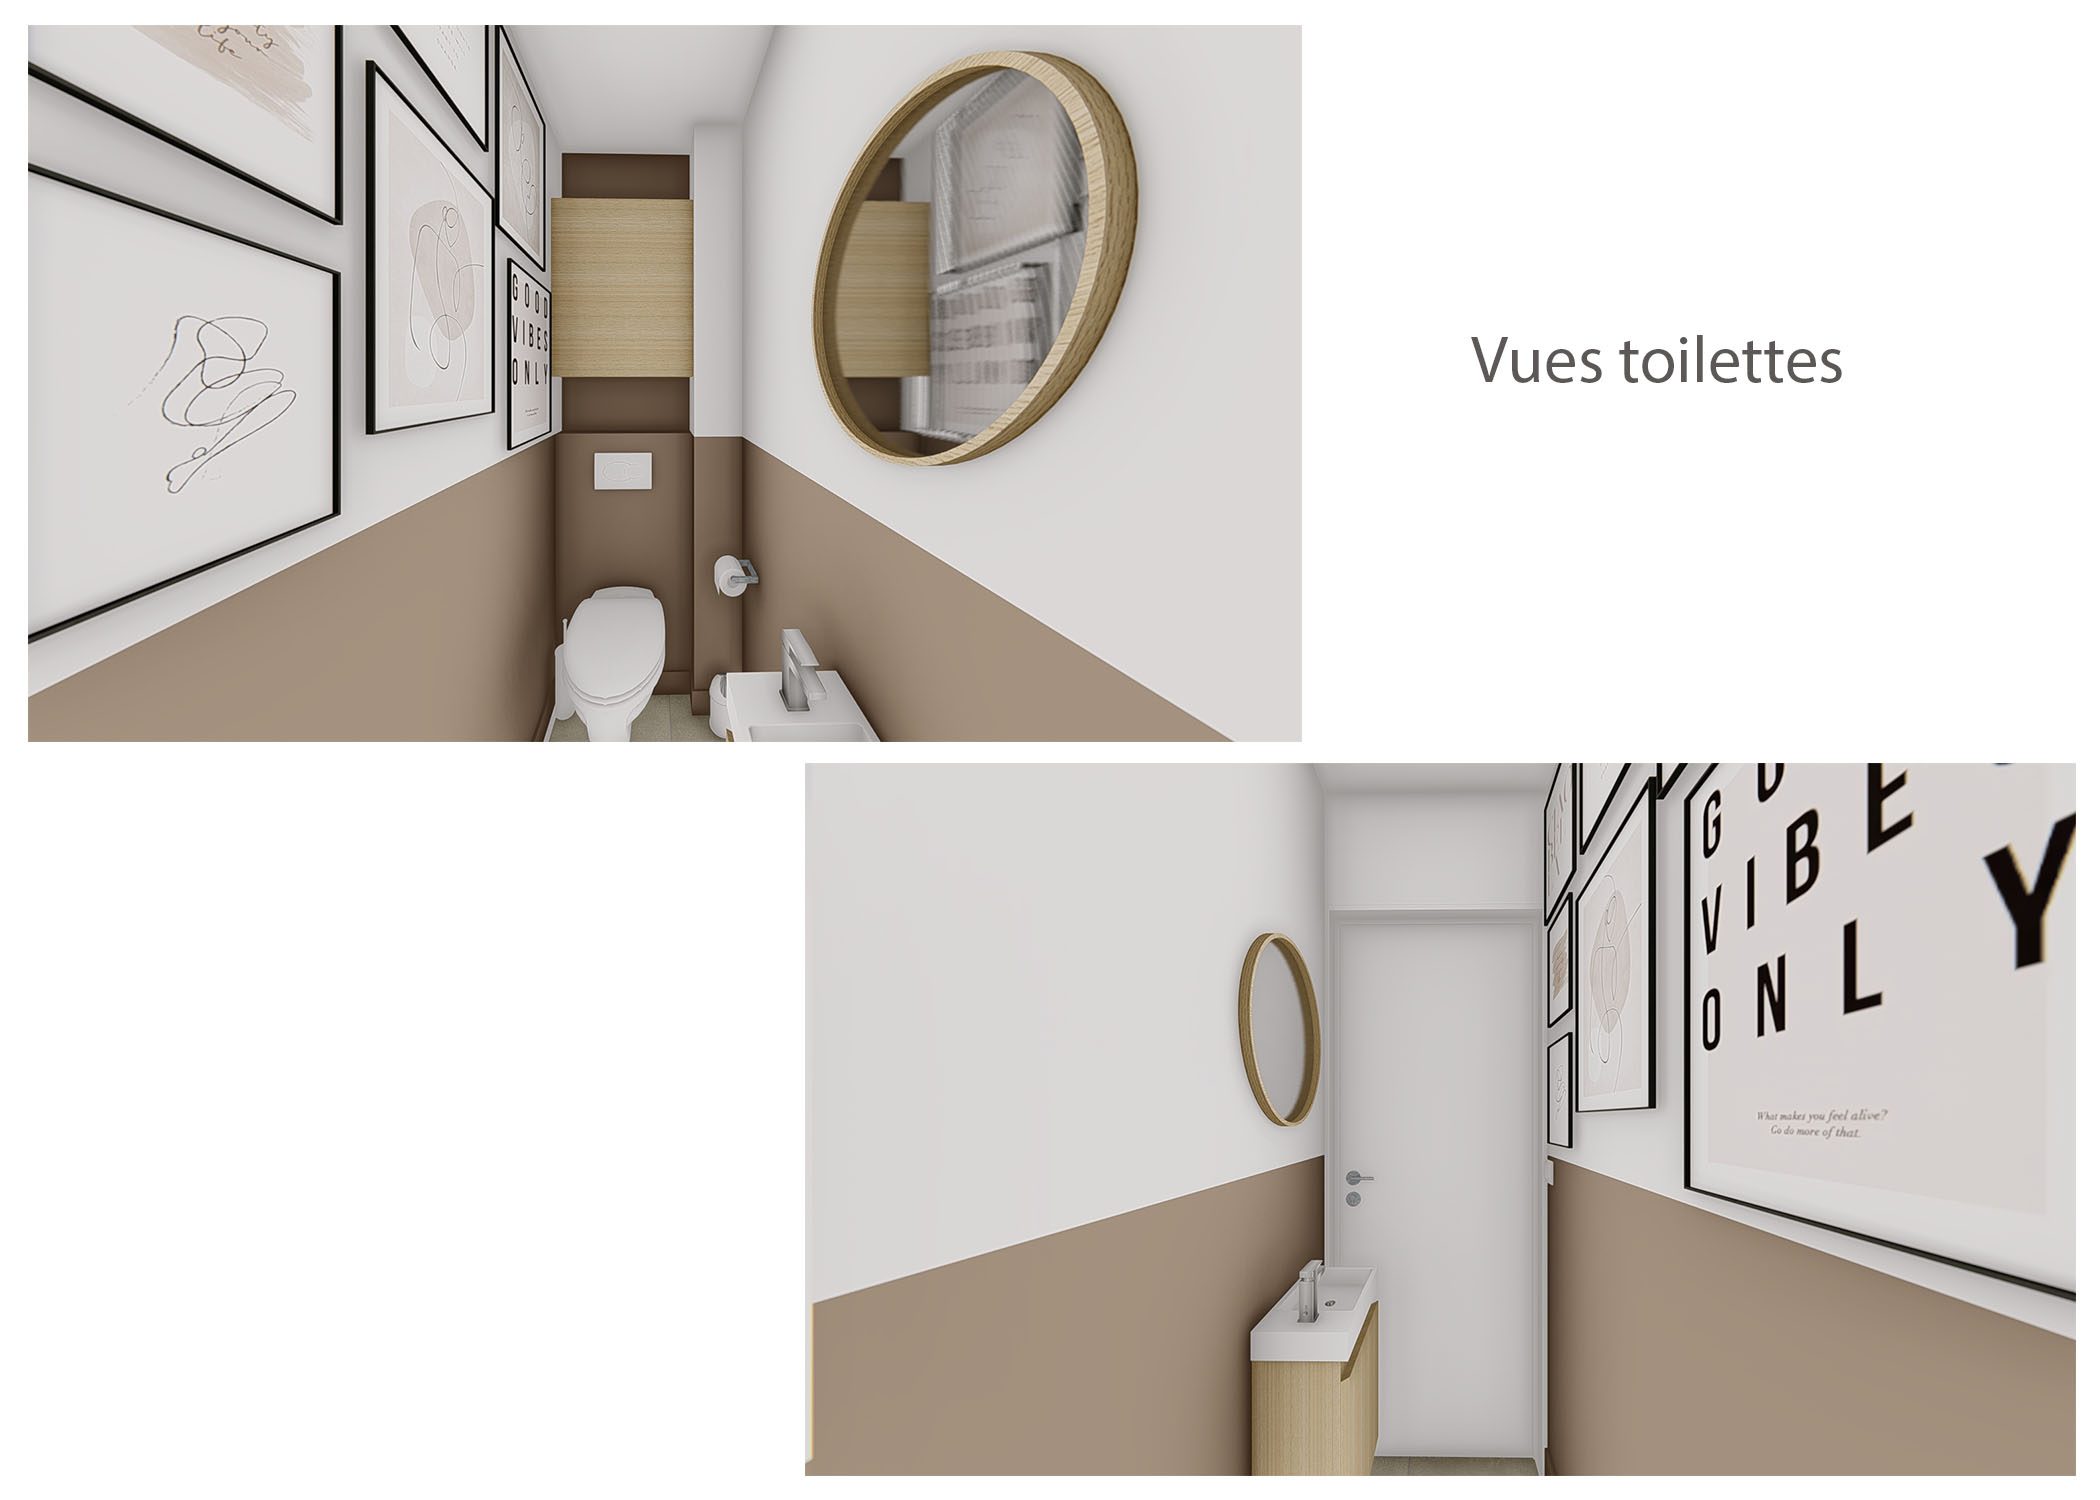 amenagement-decoration-espace de vie maison meyreuil-vues toilettes-dekho design